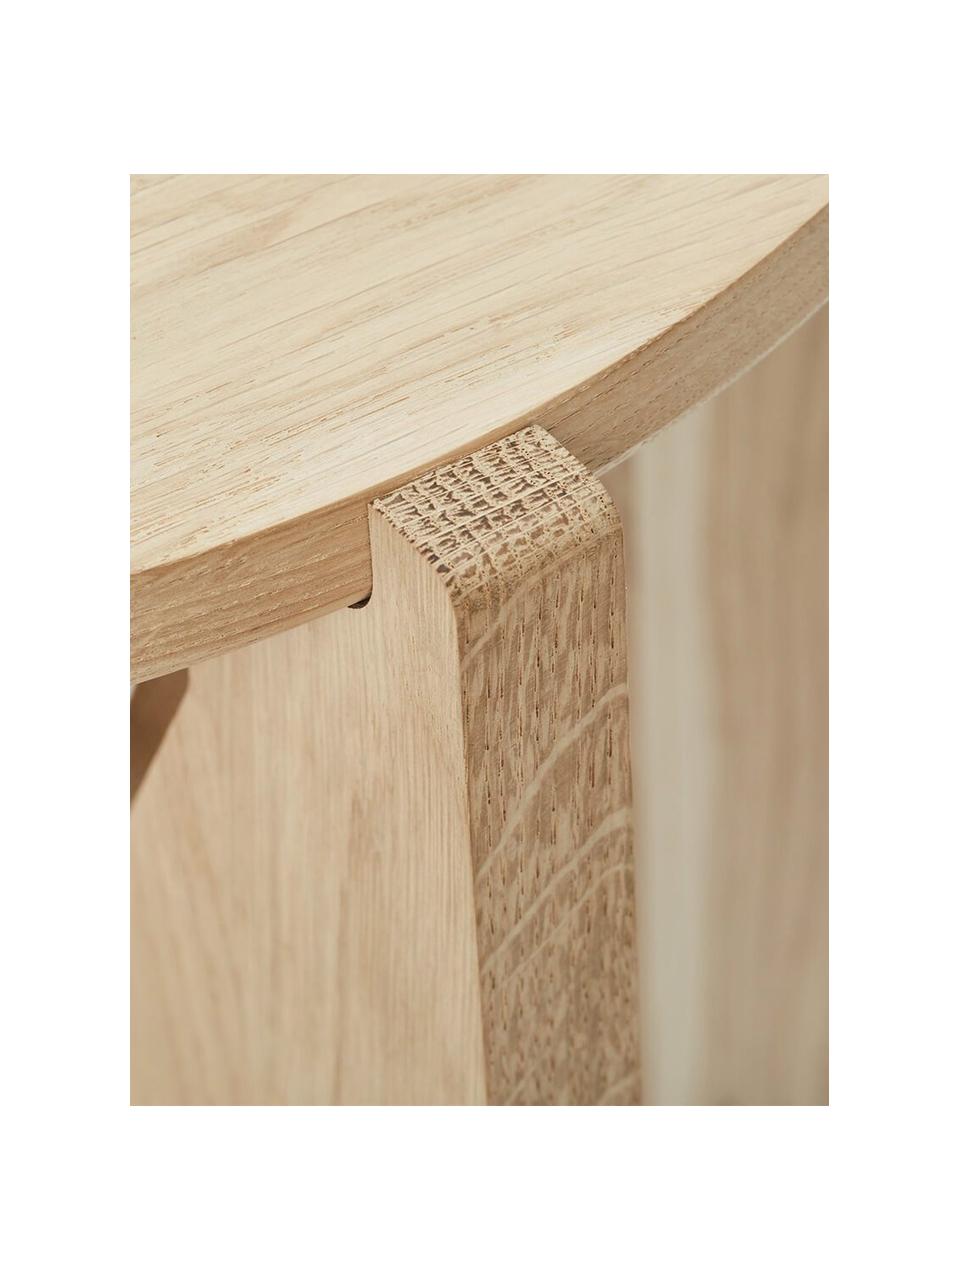 Runder Couchtisch Future aus Eichenholz, Massives Eichenholz

Dieses Produkt wird aus nachhaltig gewonnenem, FSC®-zertifiziertem Holz gefertigt., Eichenholz, Ø 78 cm